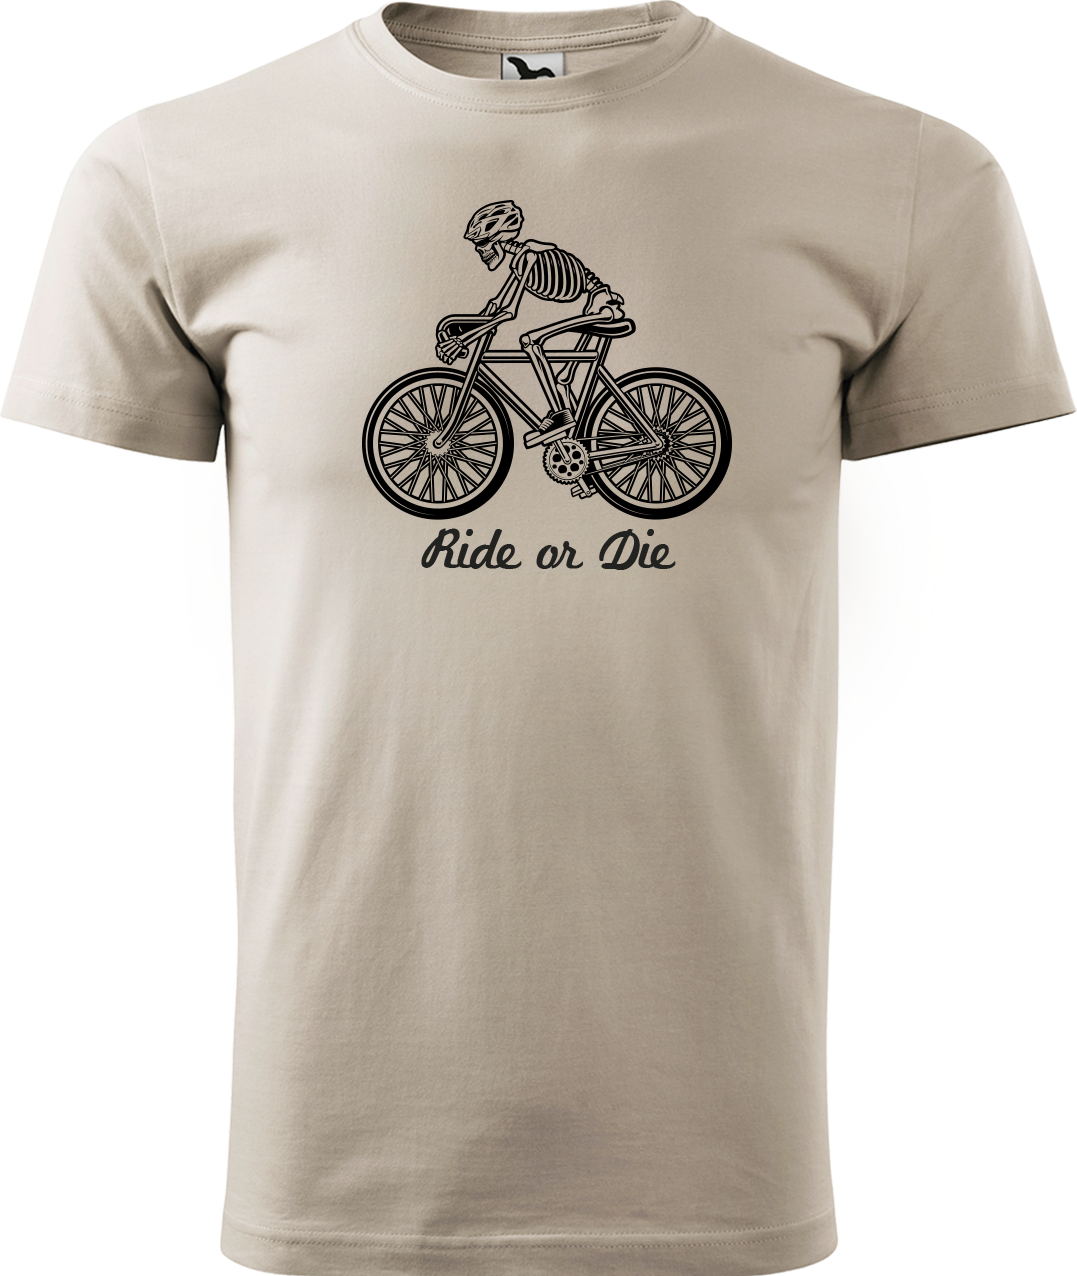 Pánské tričko pro cyklistu - Ride or Die Velikost: S, Barva: Béžová (51)